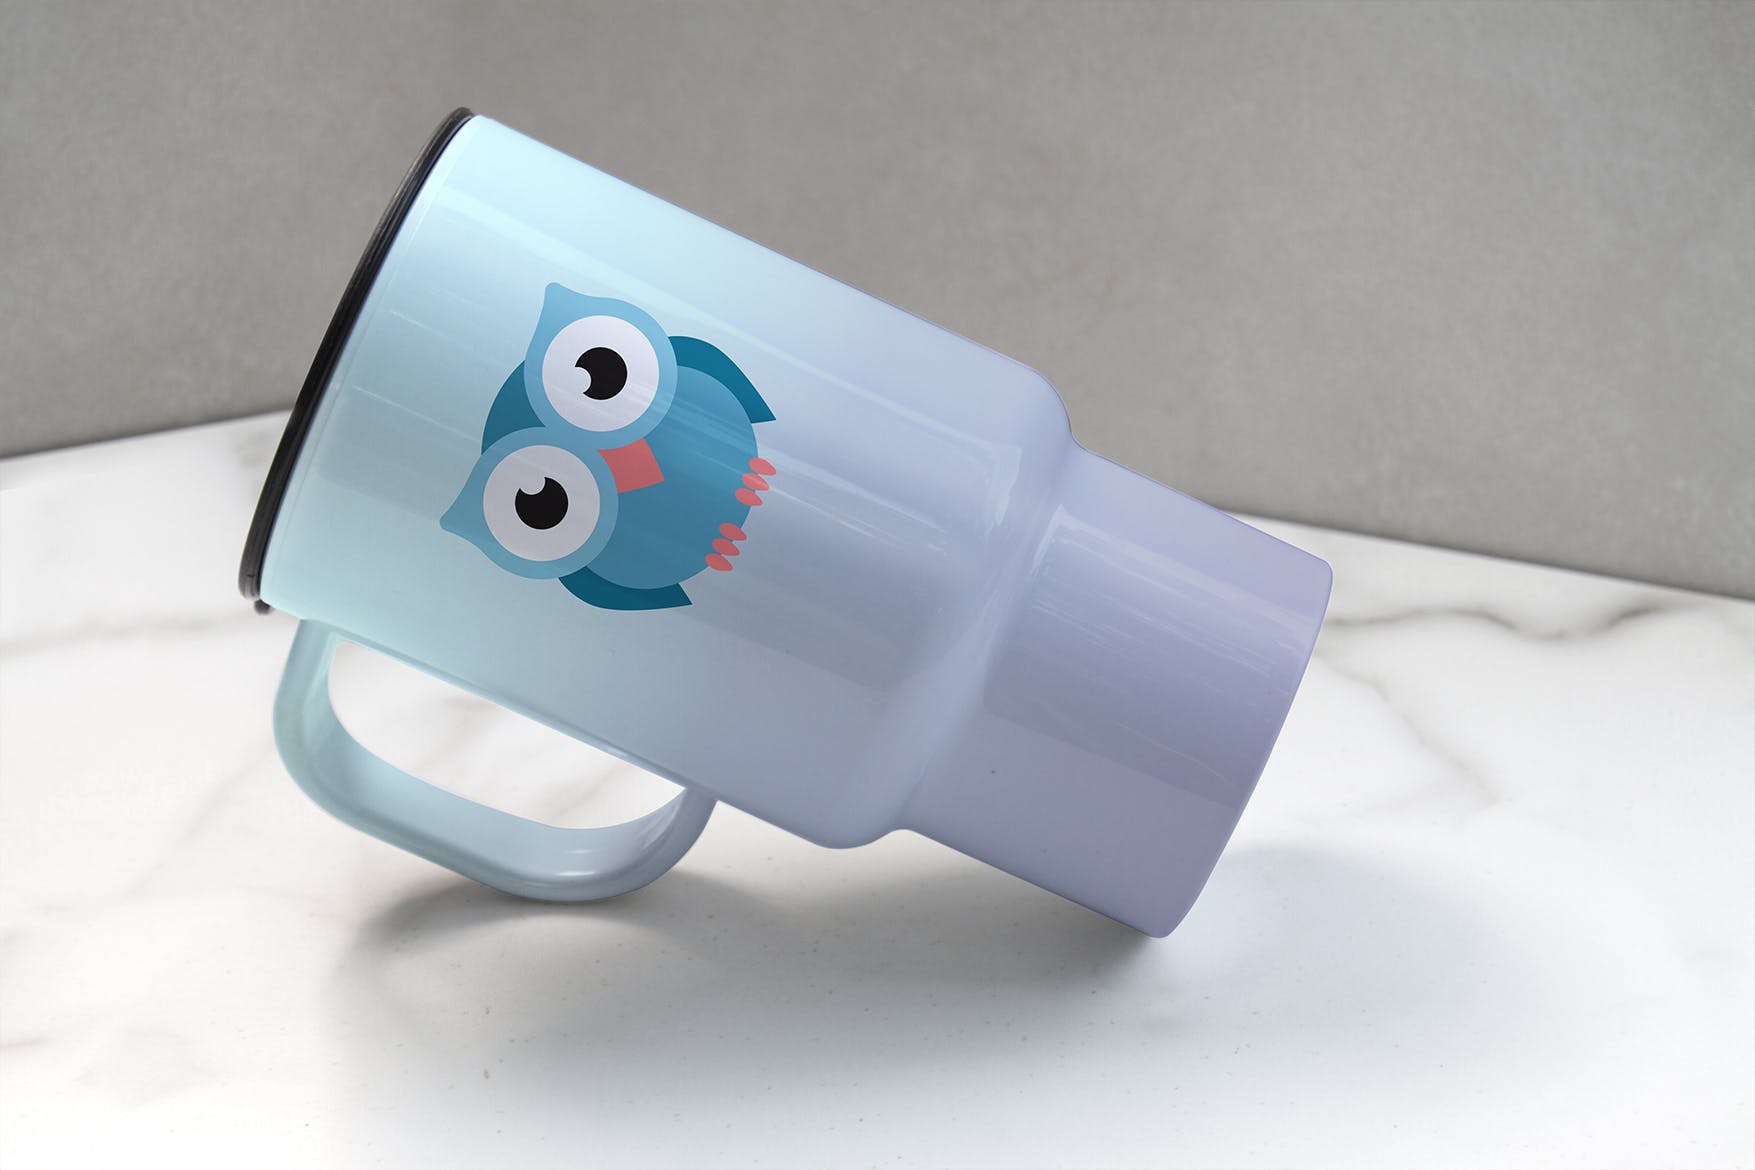 便携式杯子图案设计预览非凡图库精选 Portable Cup Mockup插图